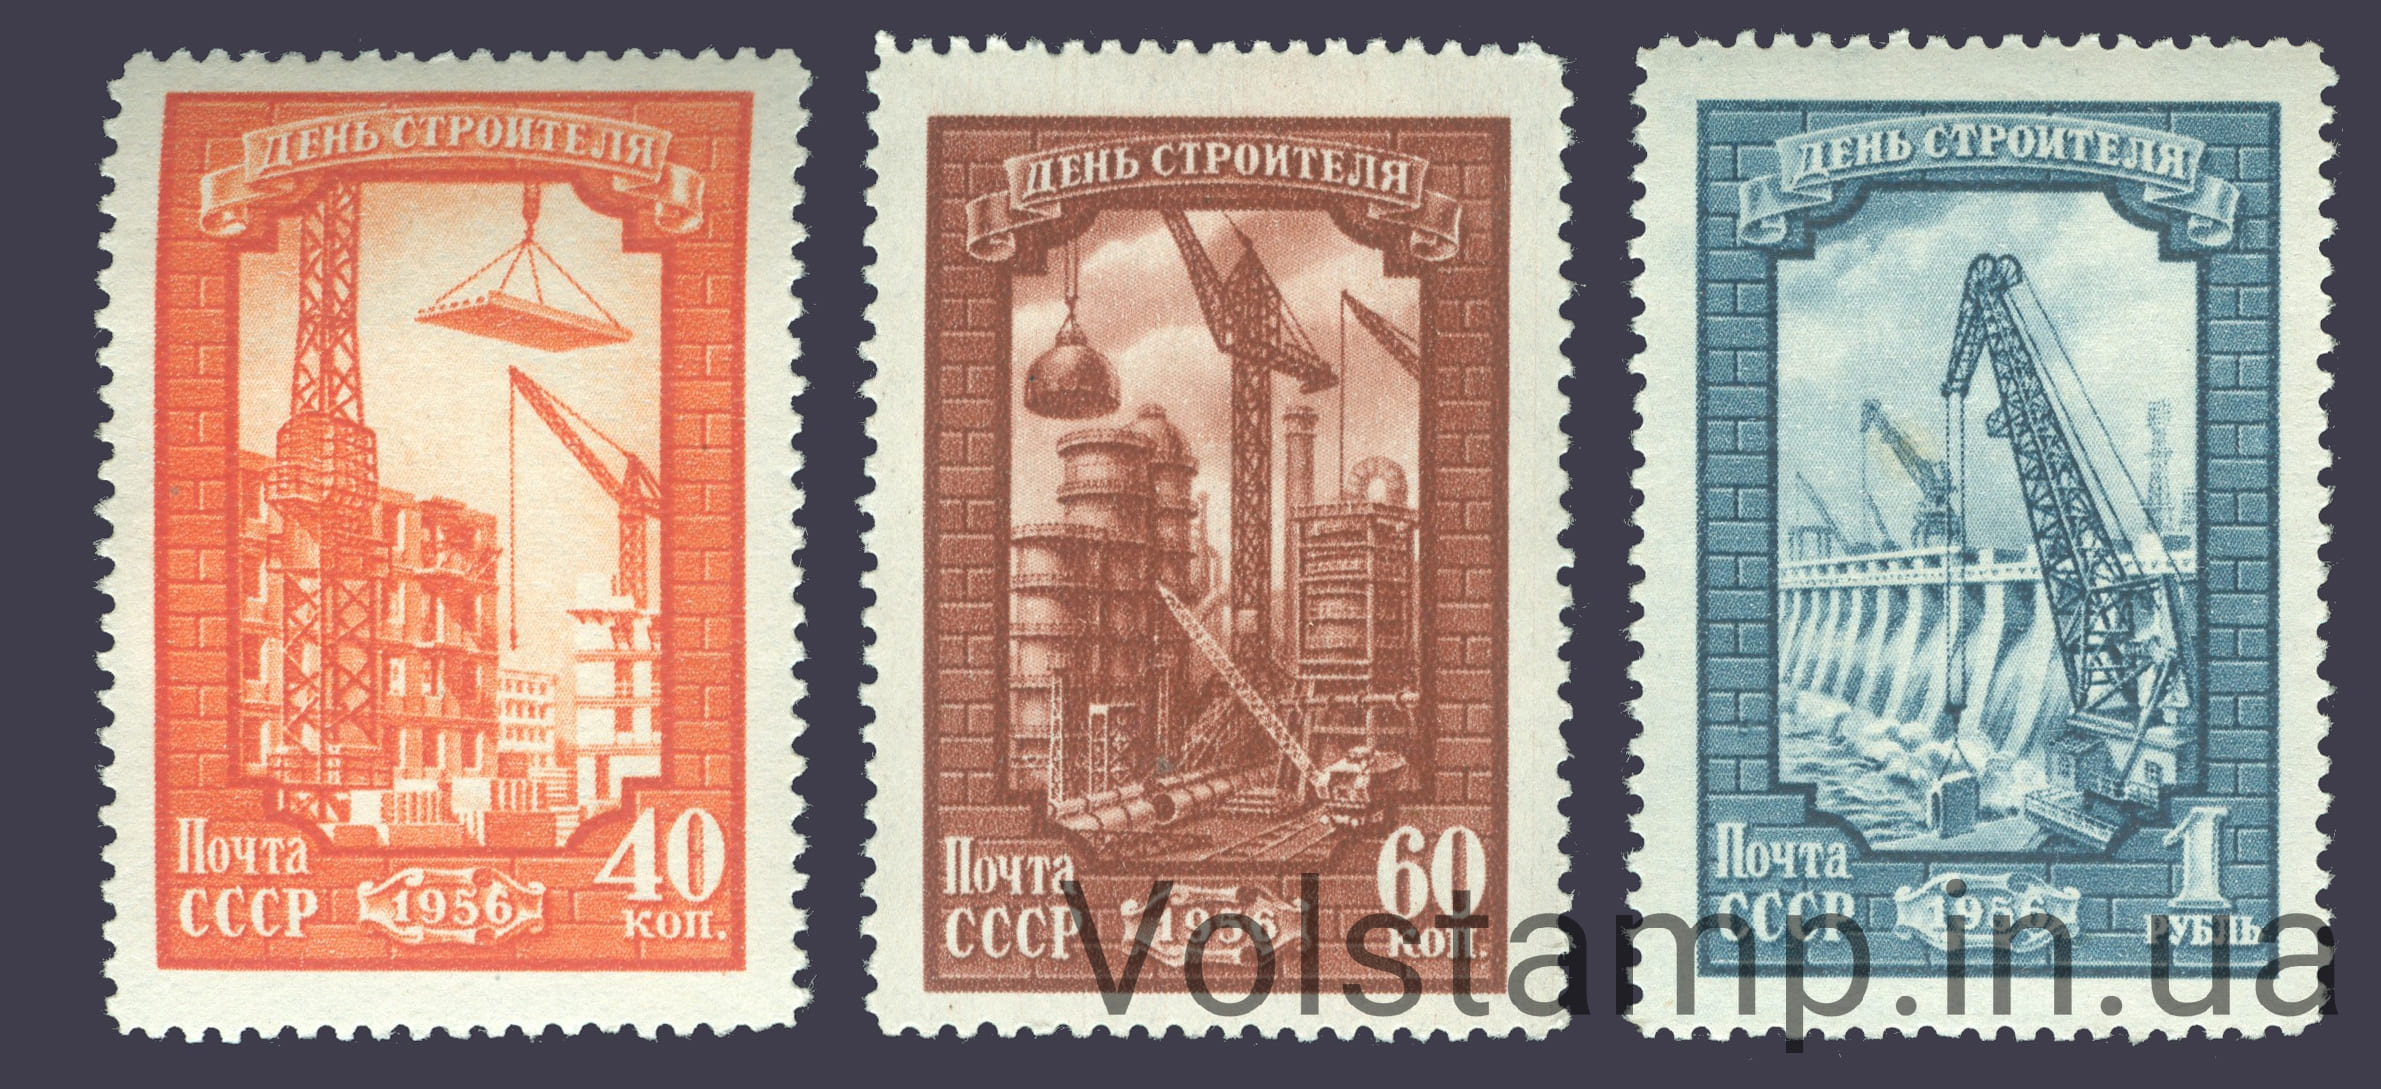 1956 серия марок День строителя - MNH №1833-1835